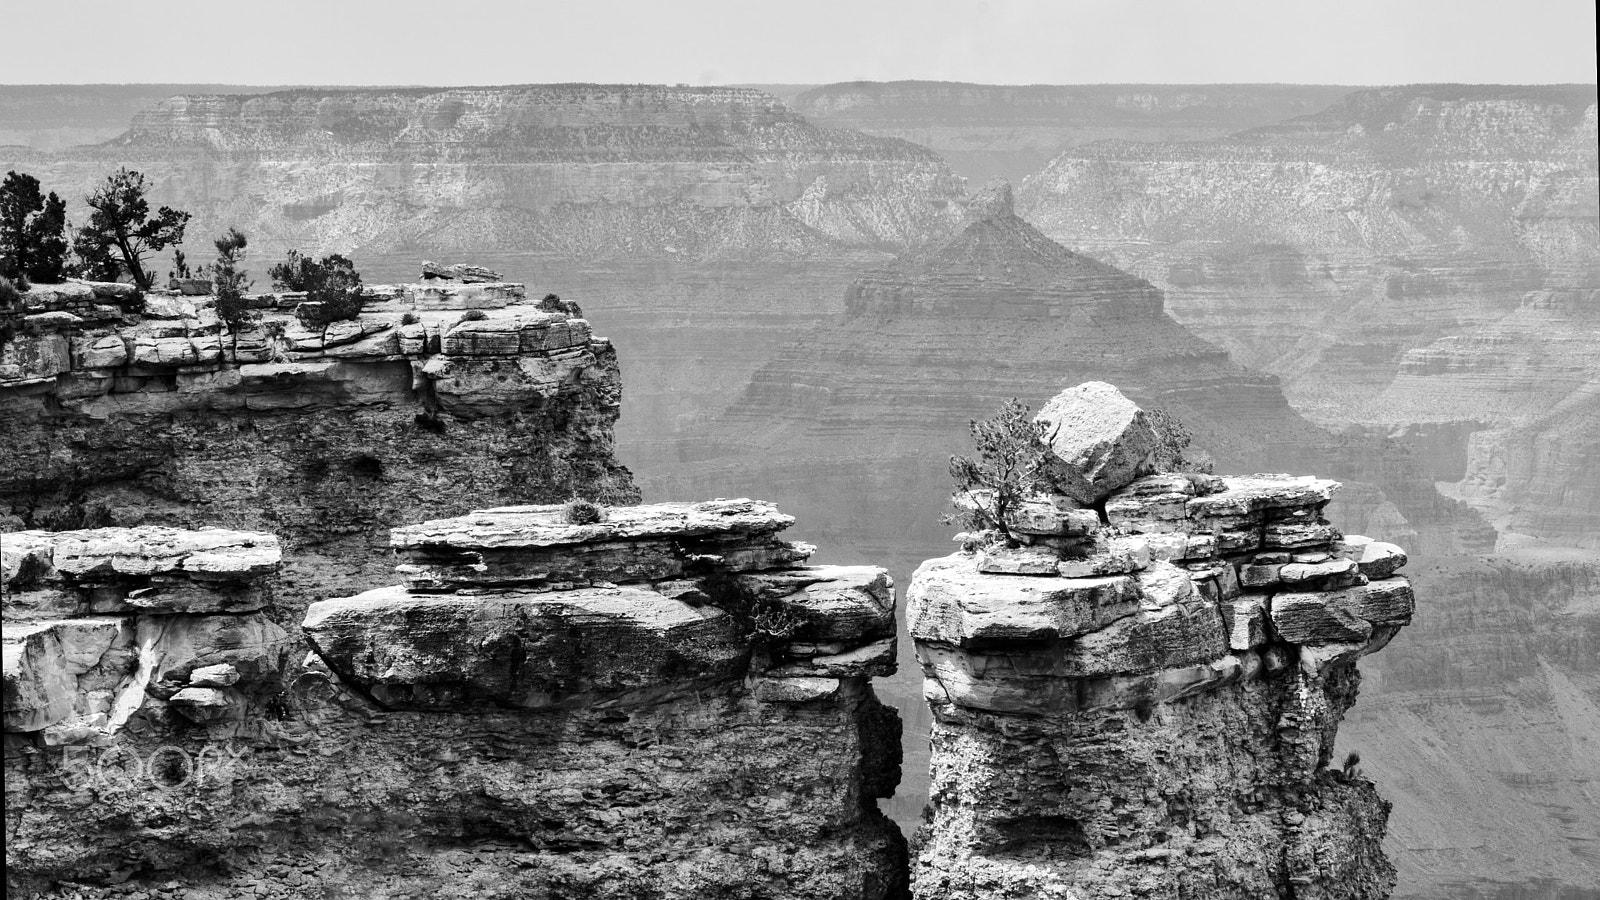 Nikon D5200 + Tamron SP AF 70-200mm F2.8 Di LD (IF) MACRO sample photo. Rock overcrop at grand canyon national park photography